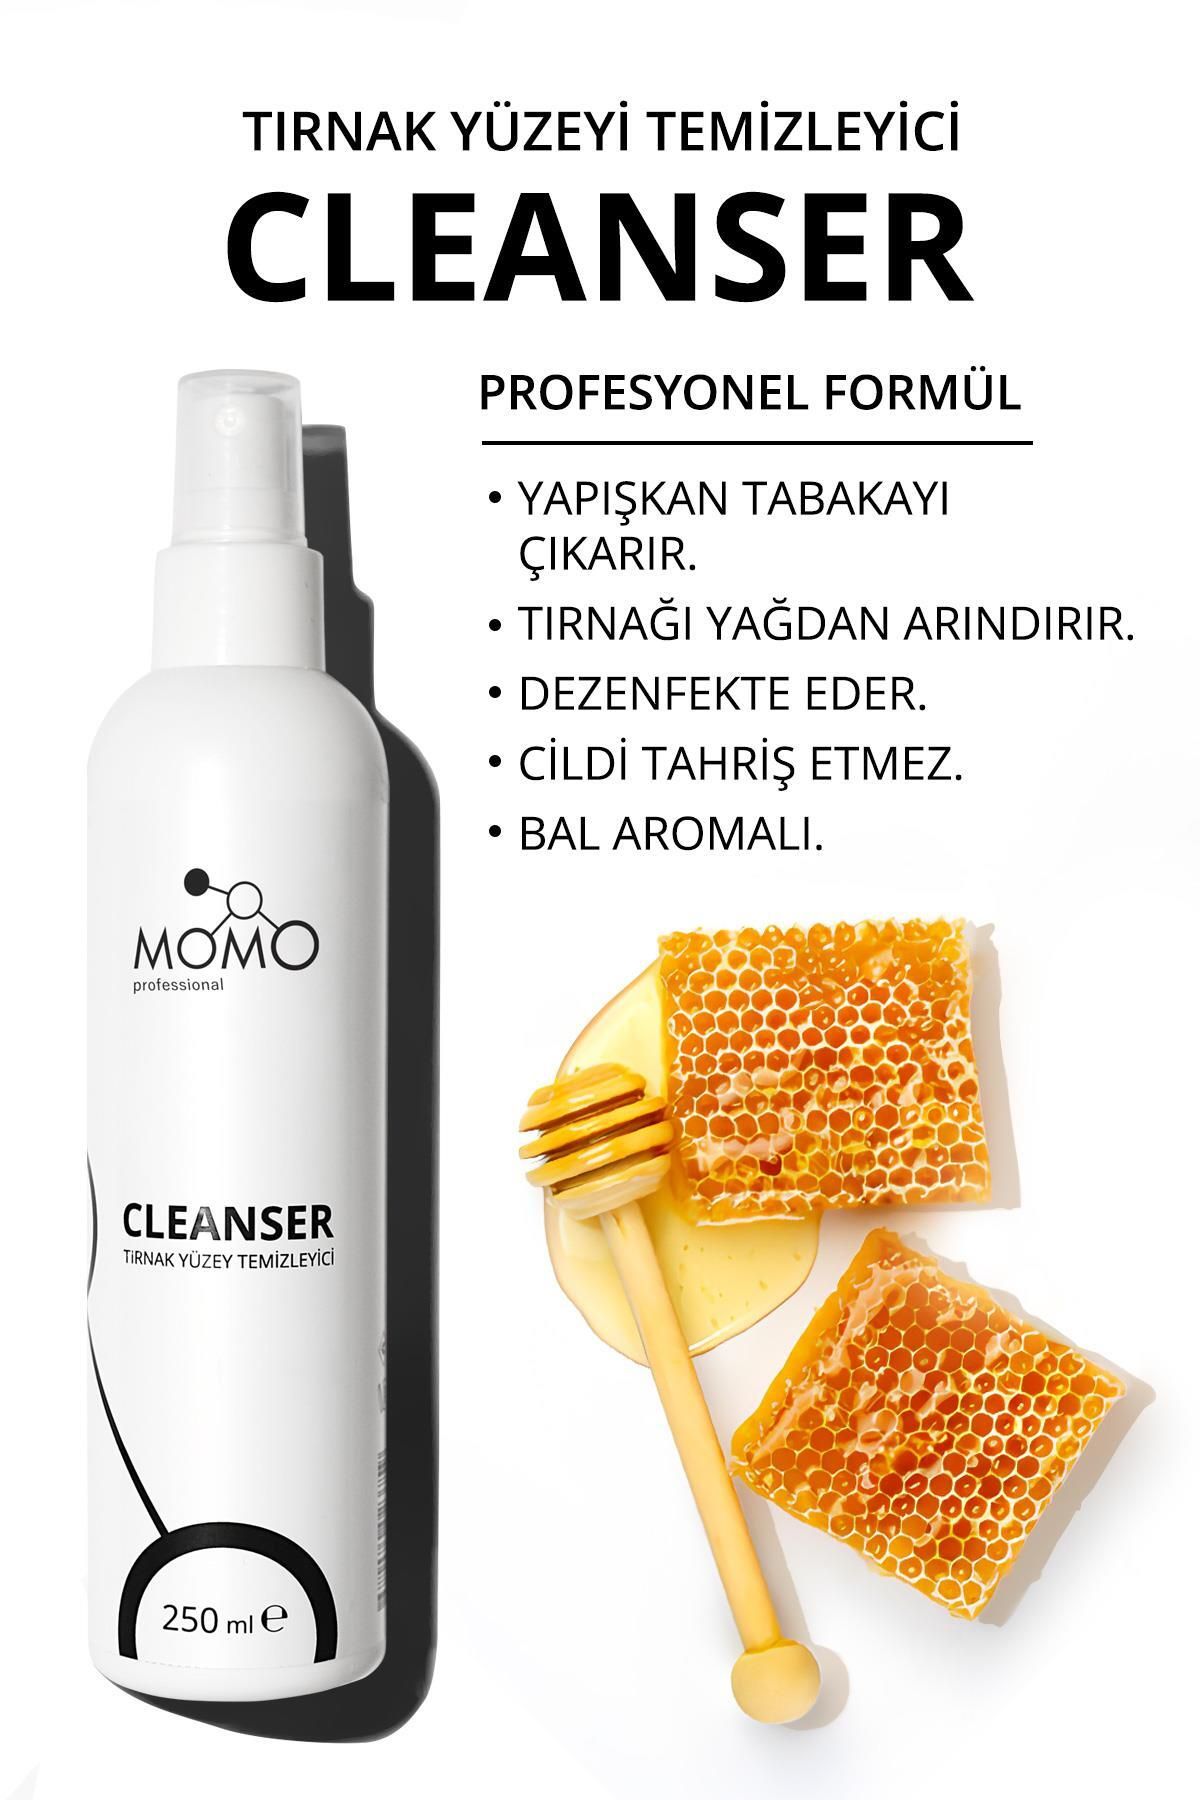 MOMO professional Tırnak Yüzey Temizleyici, Cleanser, 250 ml